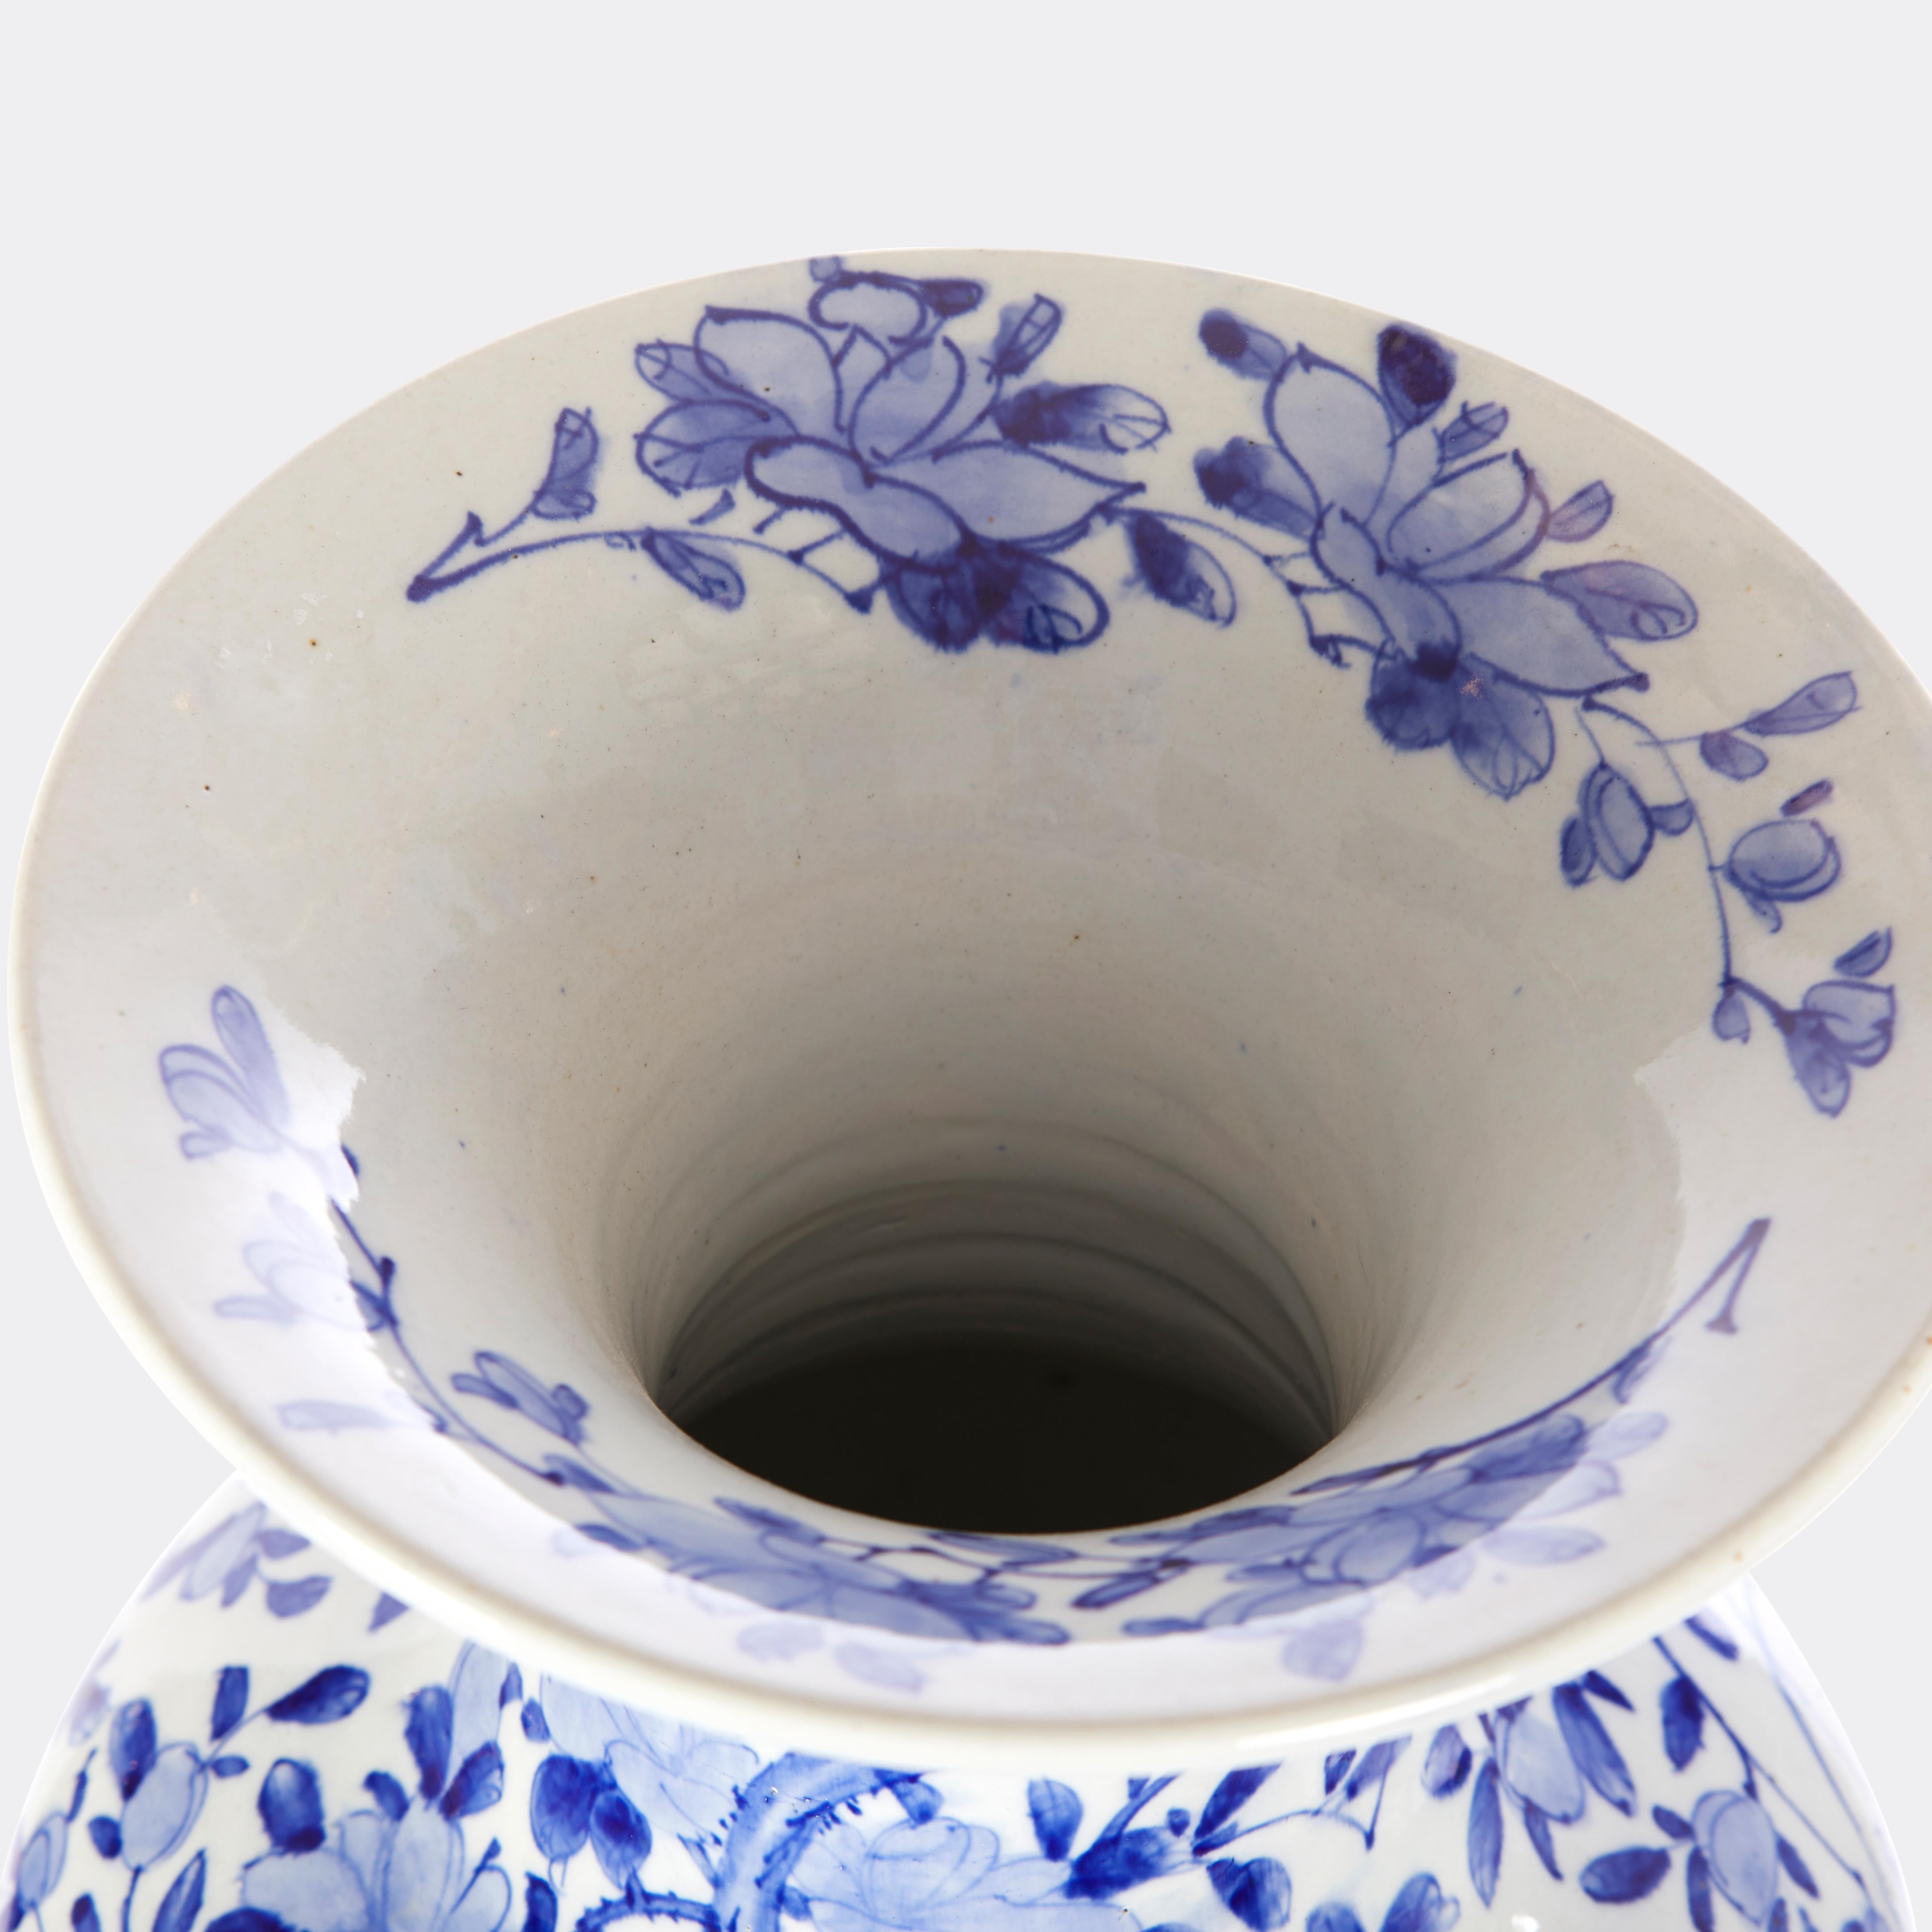 Vase japonais bleu et blanc du 20e siècle de la taille d'un palais, avec des motifs floraux et d'oiseaux. 

Mesures : 14'' de diamètre x 29,5'' de hauteur.